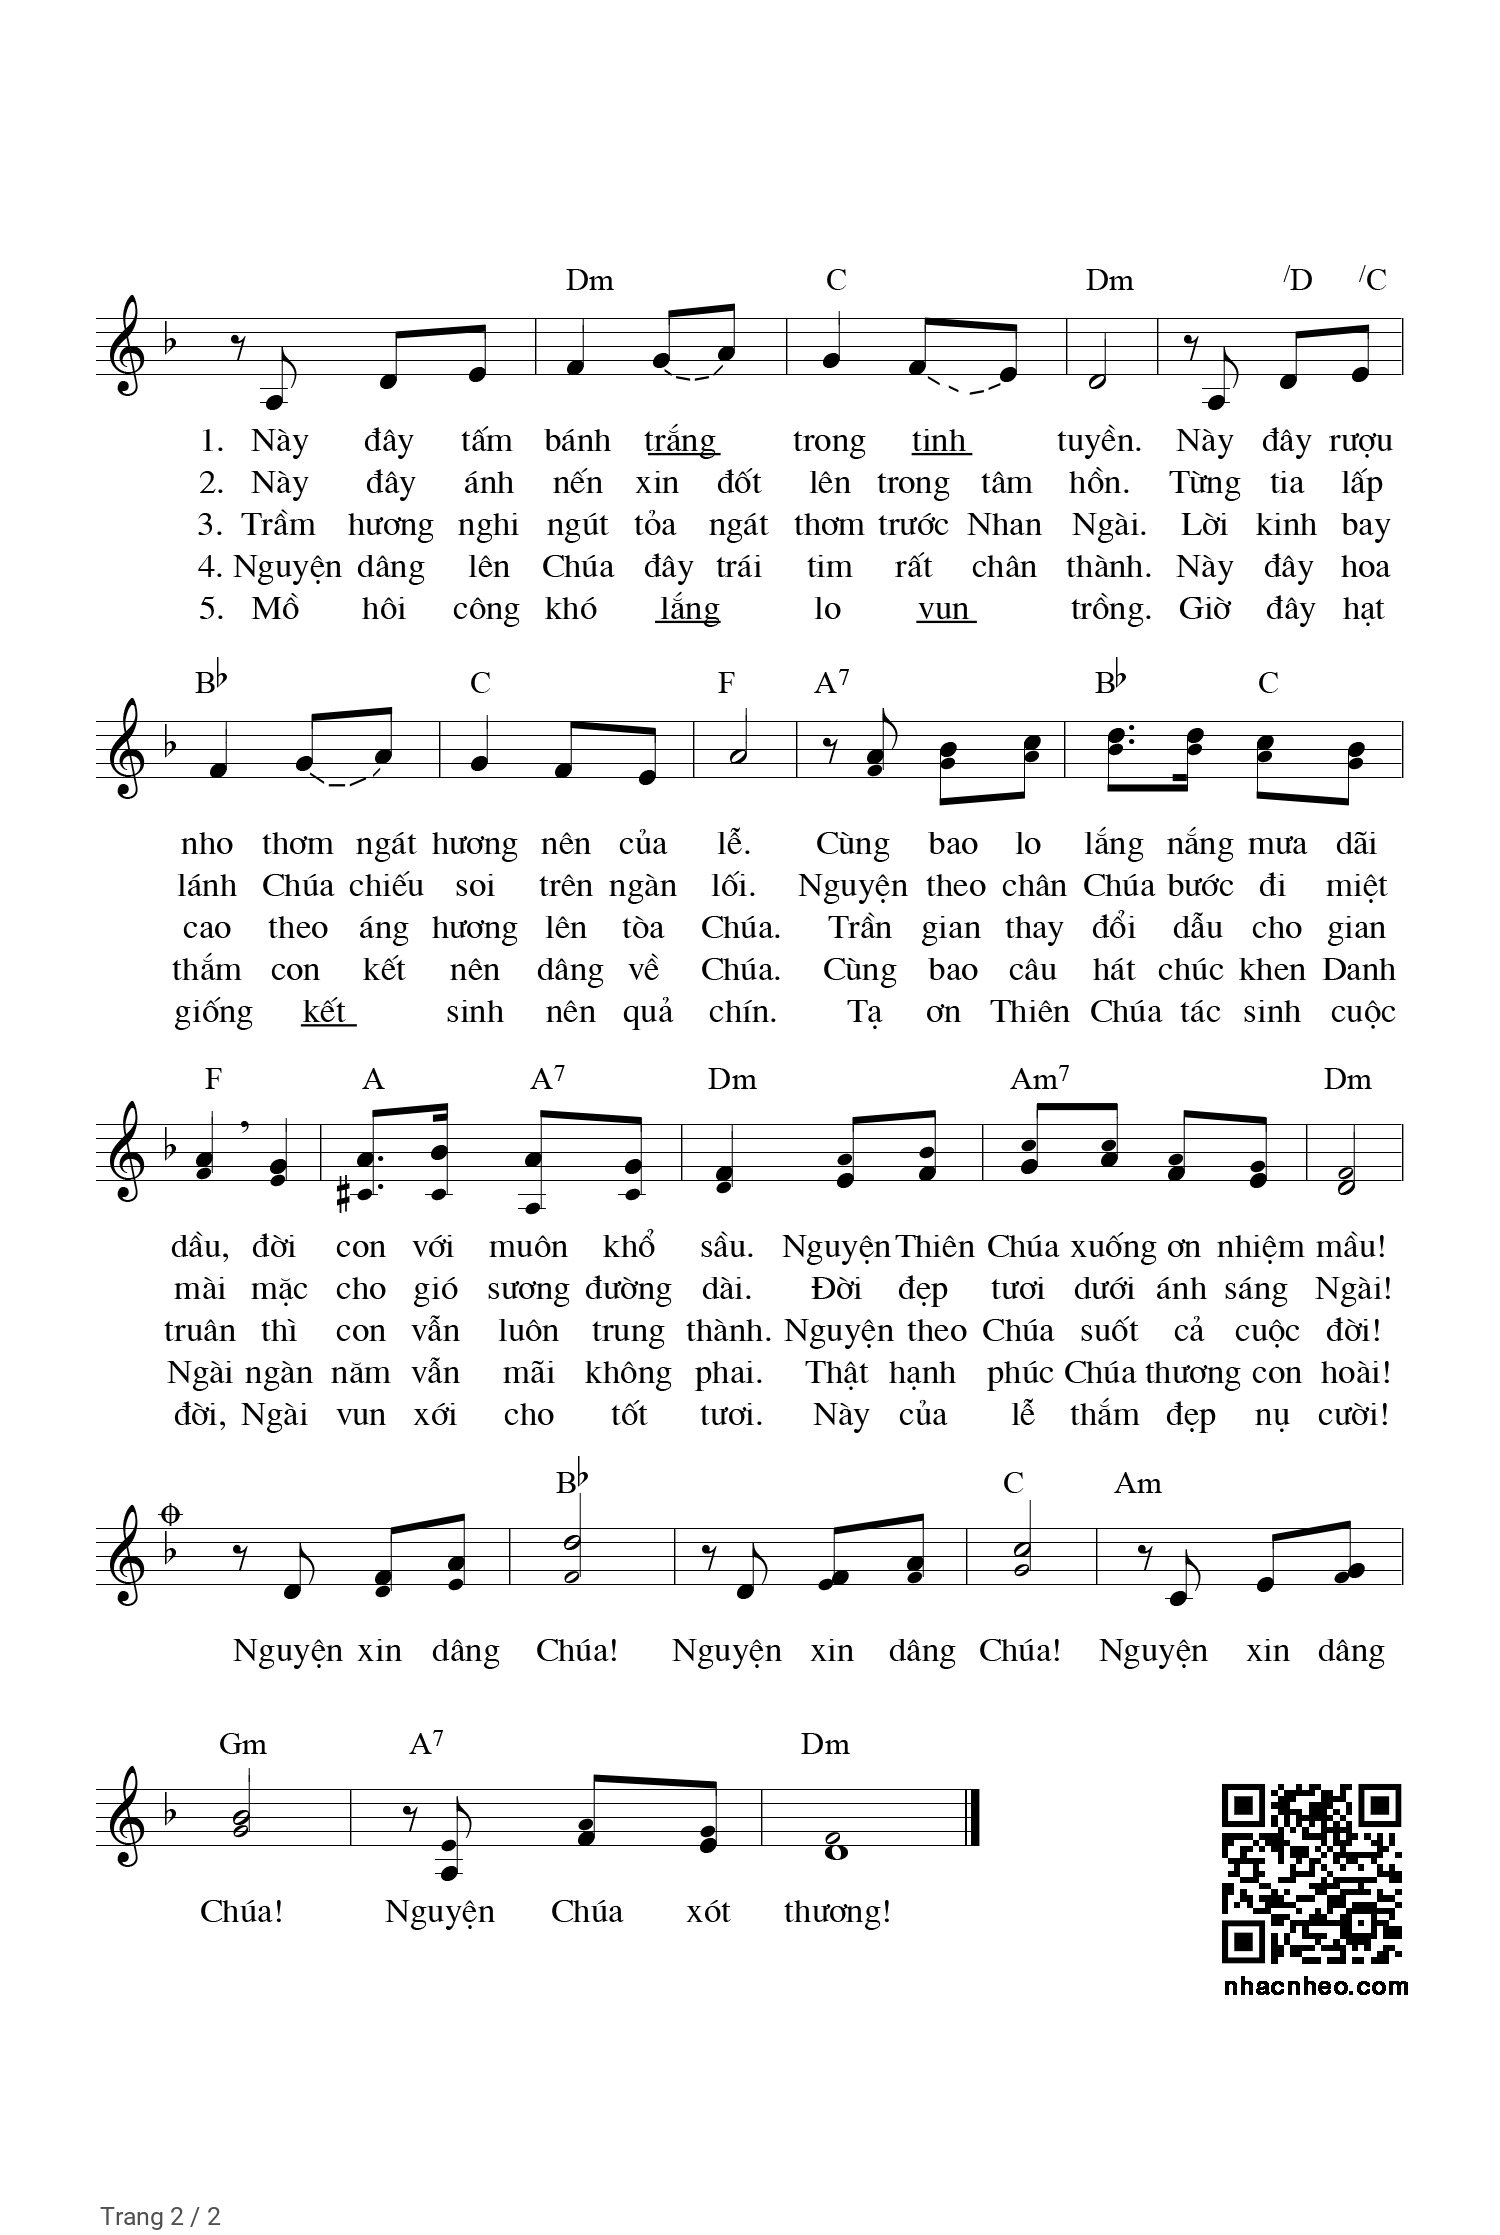 Trang 2 của Sheet nhạc PDF bài hát Nguyện dâng lên Chúa - JB. Phạm Quốc Huân